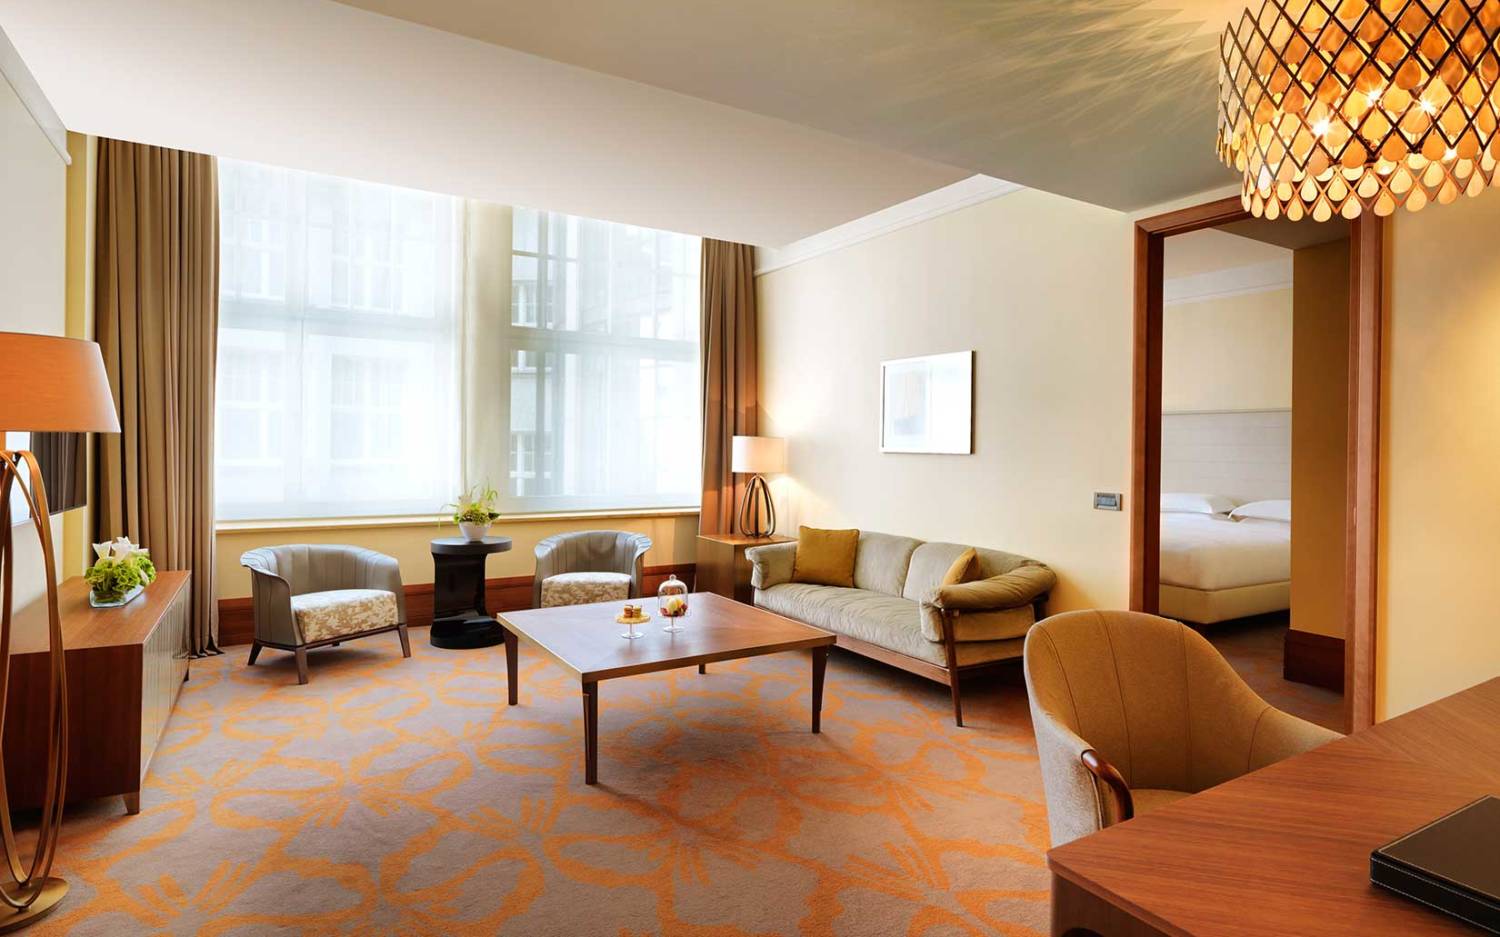 Klassisch, schickes Hotelzimmer-Design im 5-Sterne Park Hyatt Hotel / ©Park Hyatt